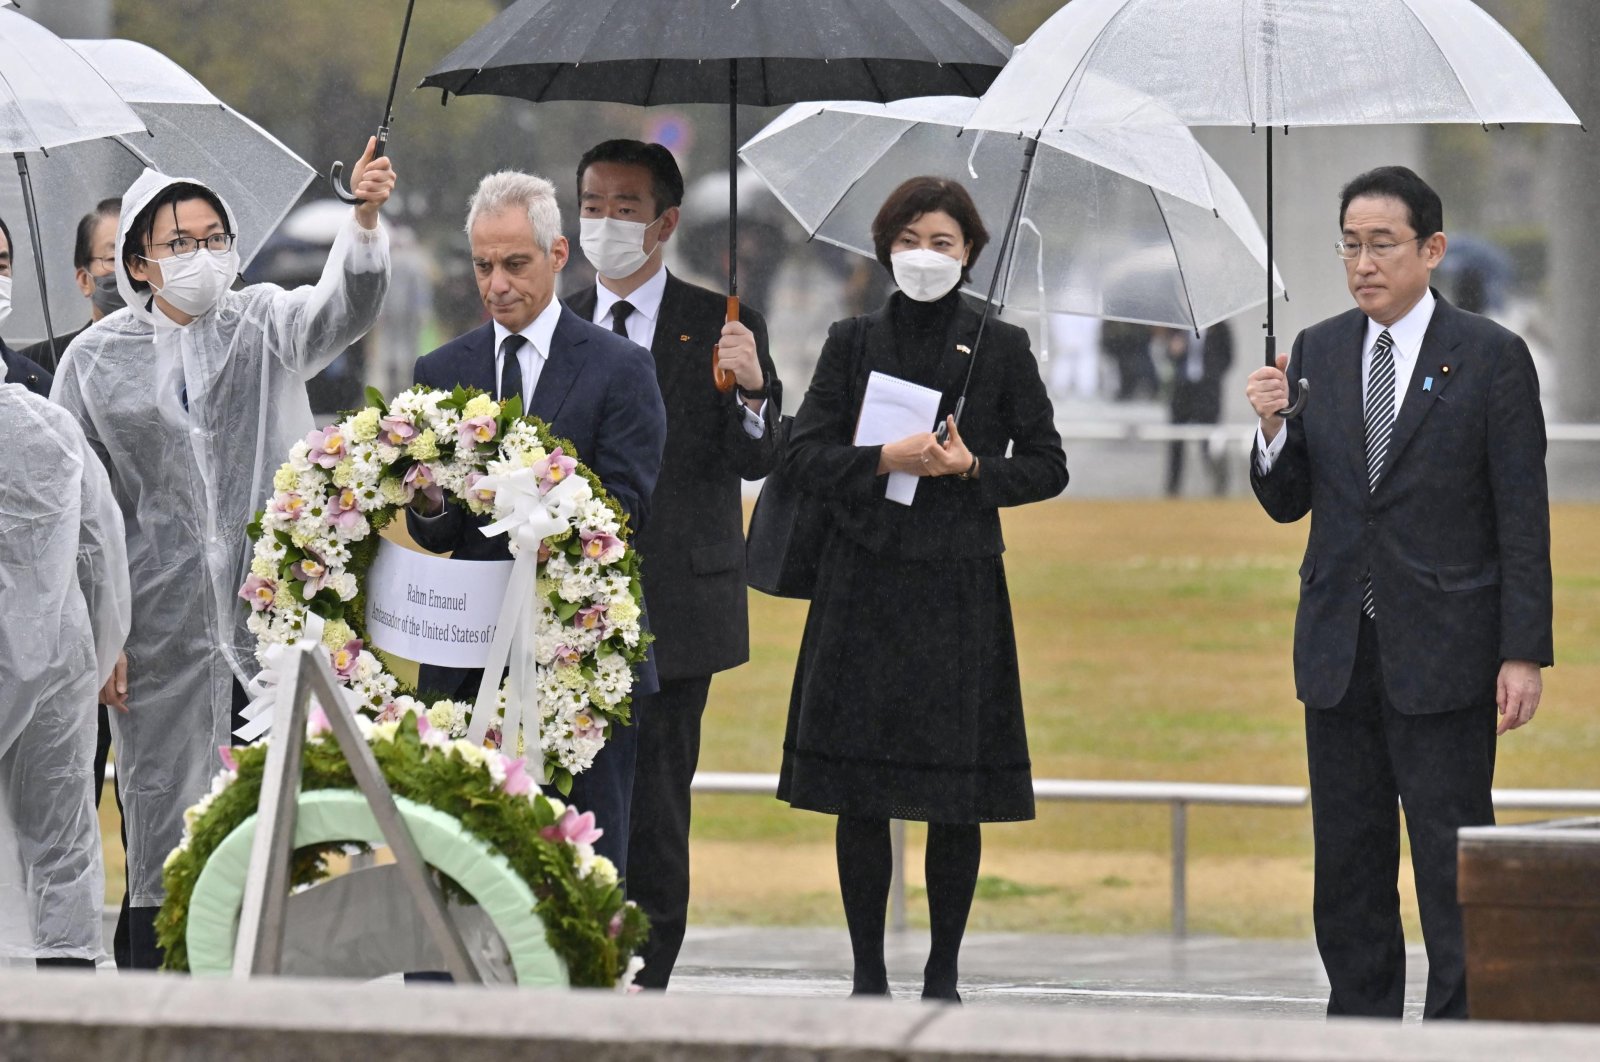 Duta Besar AS untuk Jepang mengunjungi Hiroshima, mempromosikan perdamaian